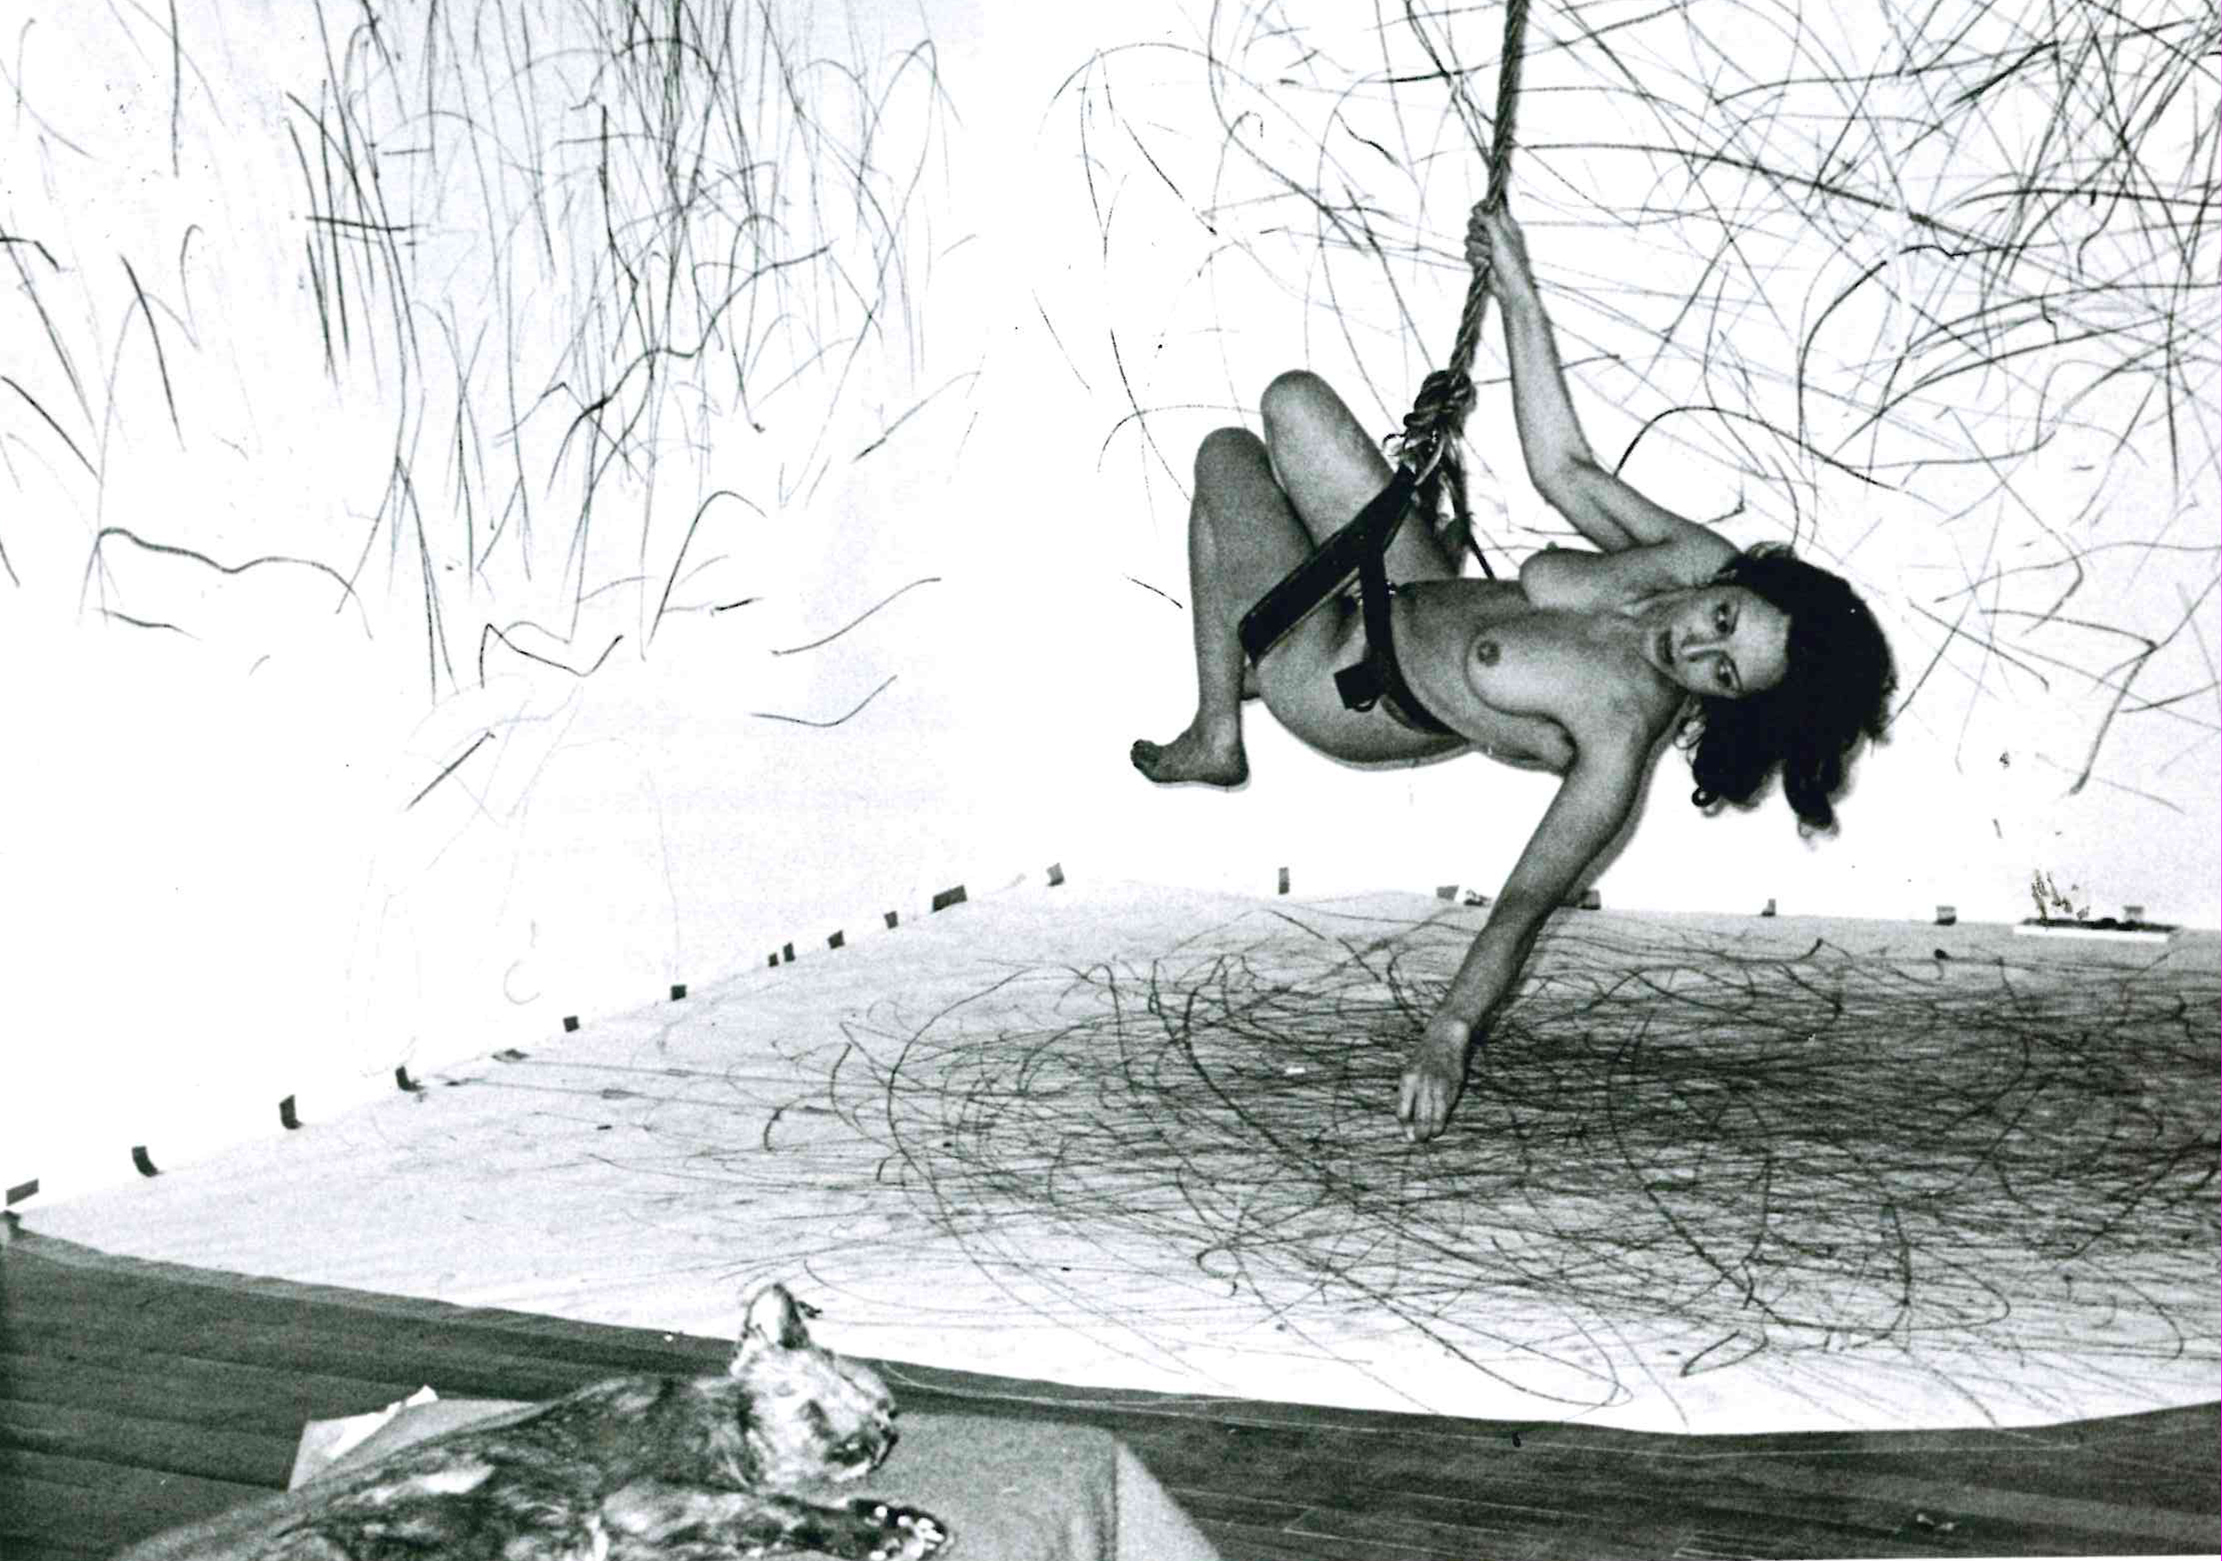 Up to and Including Her Limits, 1973-76. Кароли Шниманн (Carolee Schneemann) - современная американская художница. Искусство США. Феминистское искусство, арт-феминизм